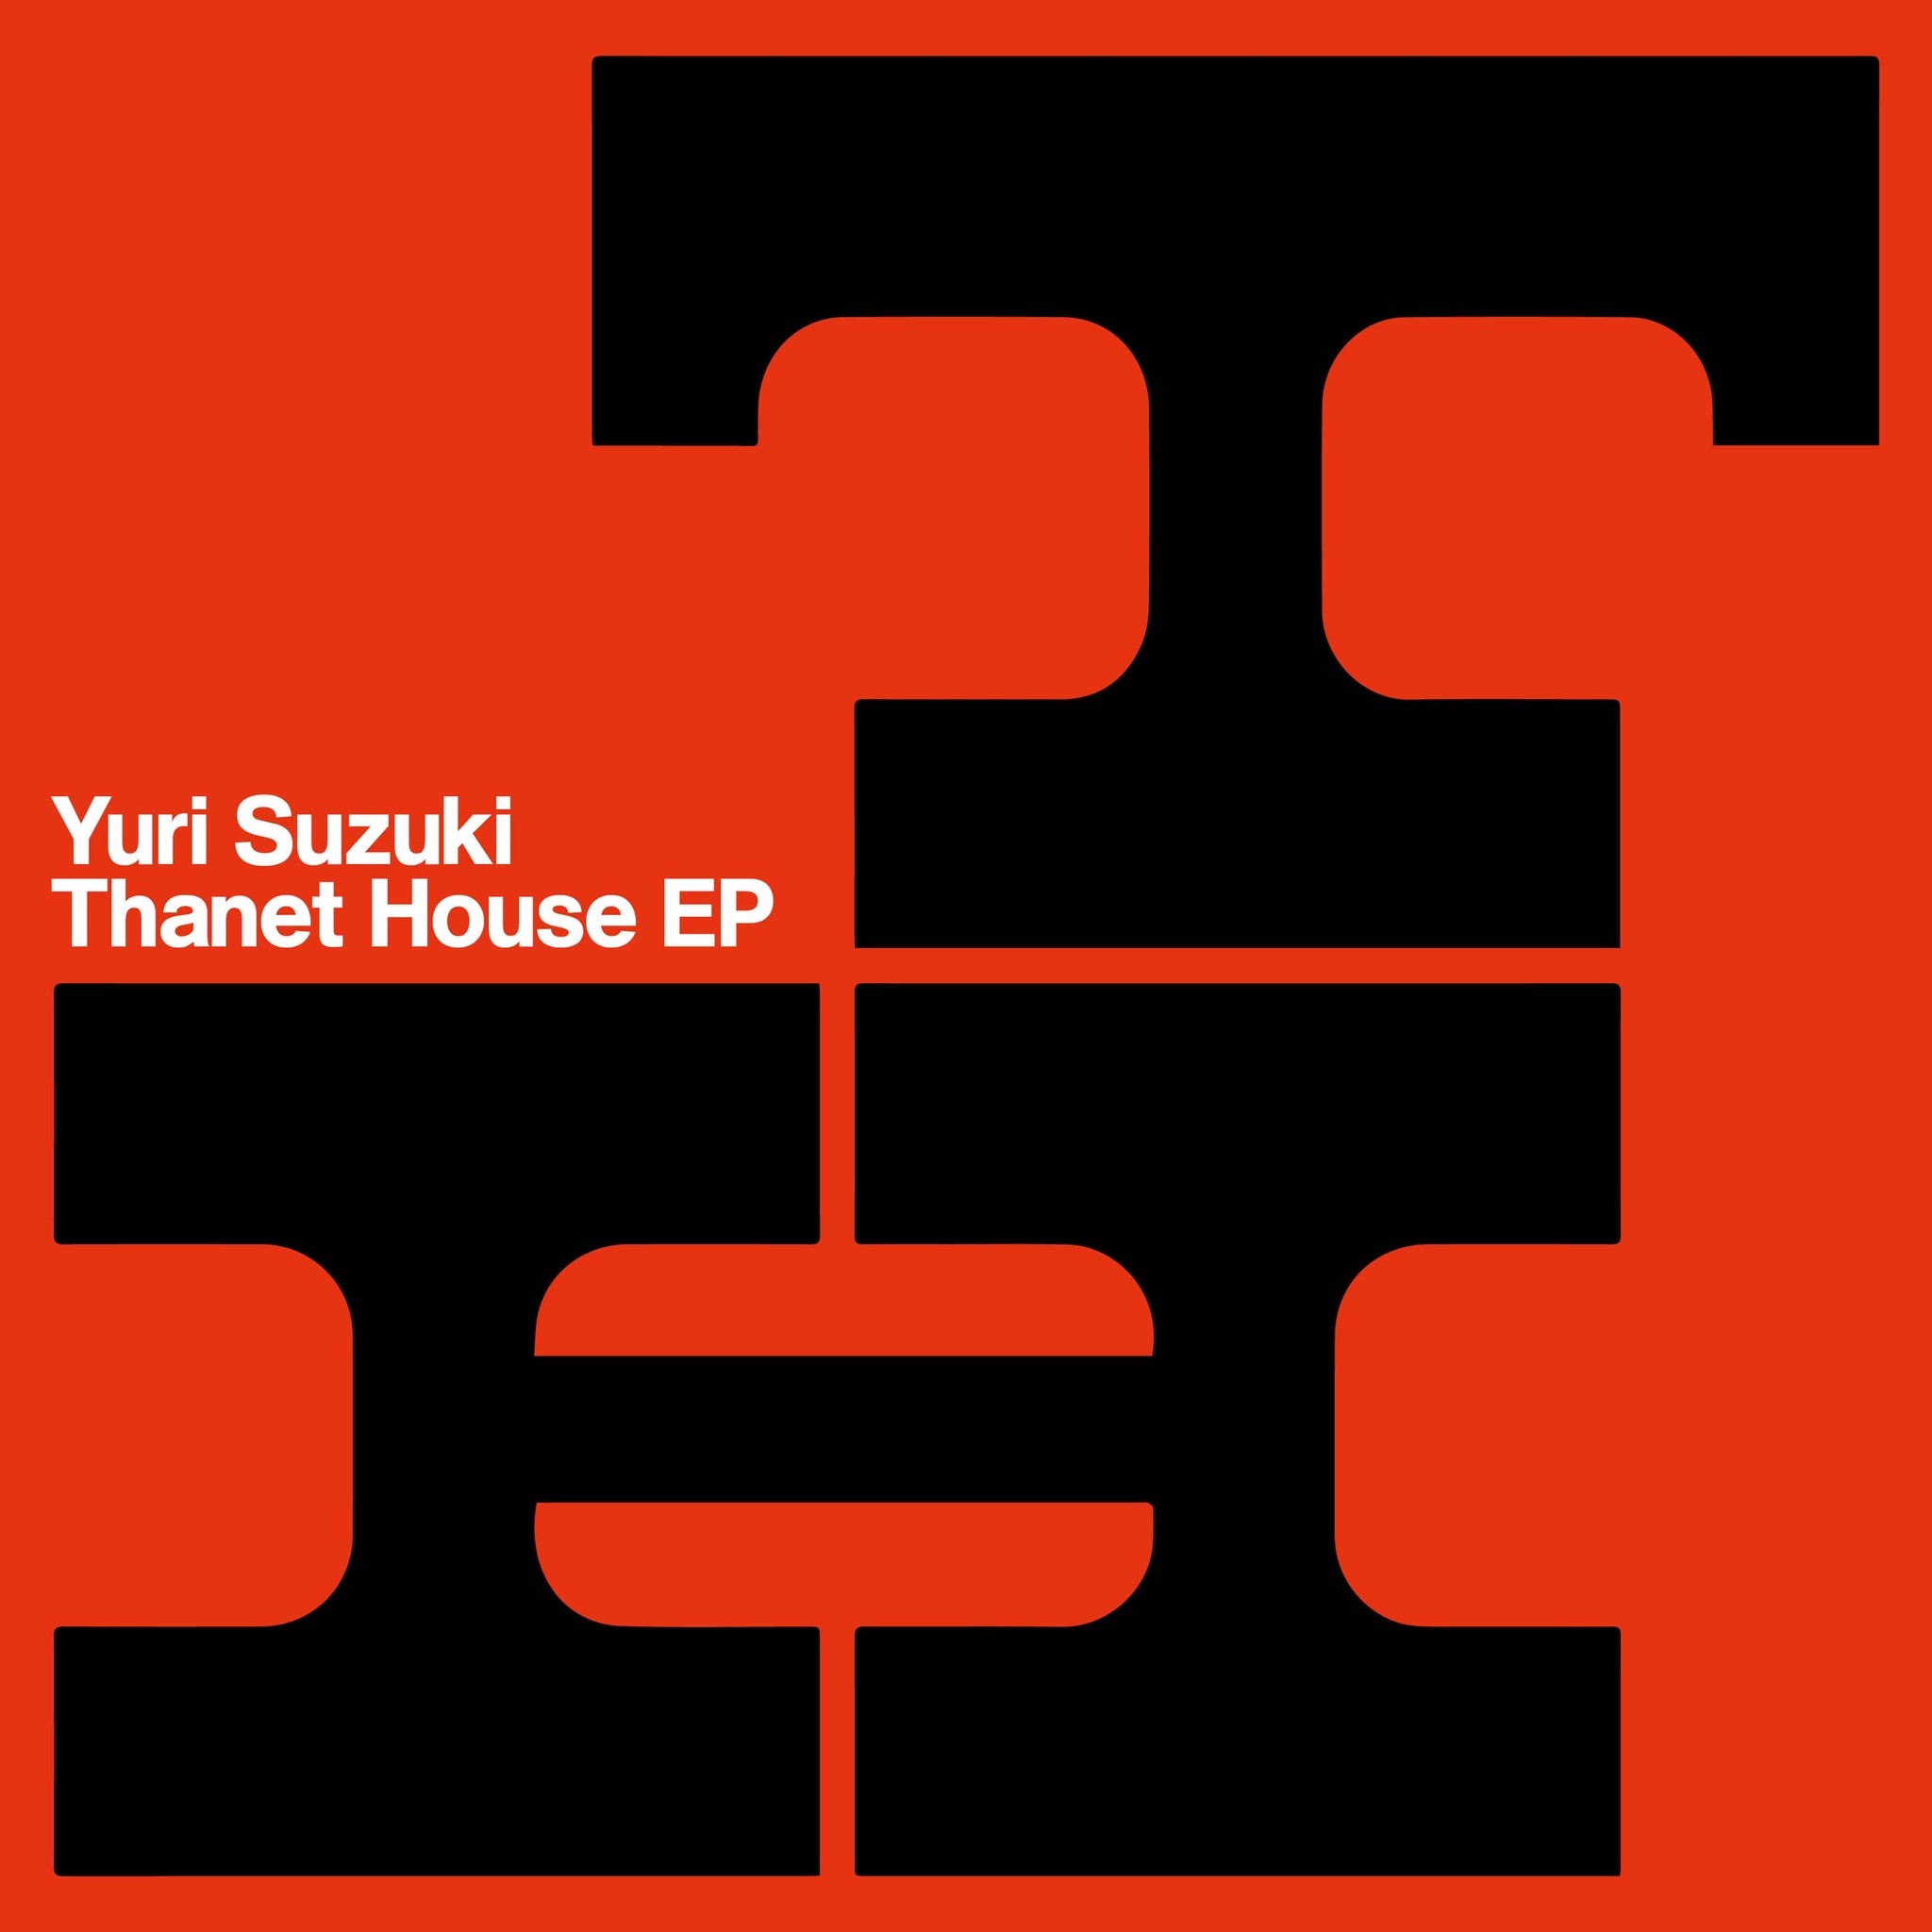 Yuri Suzuki - Thanet House EP